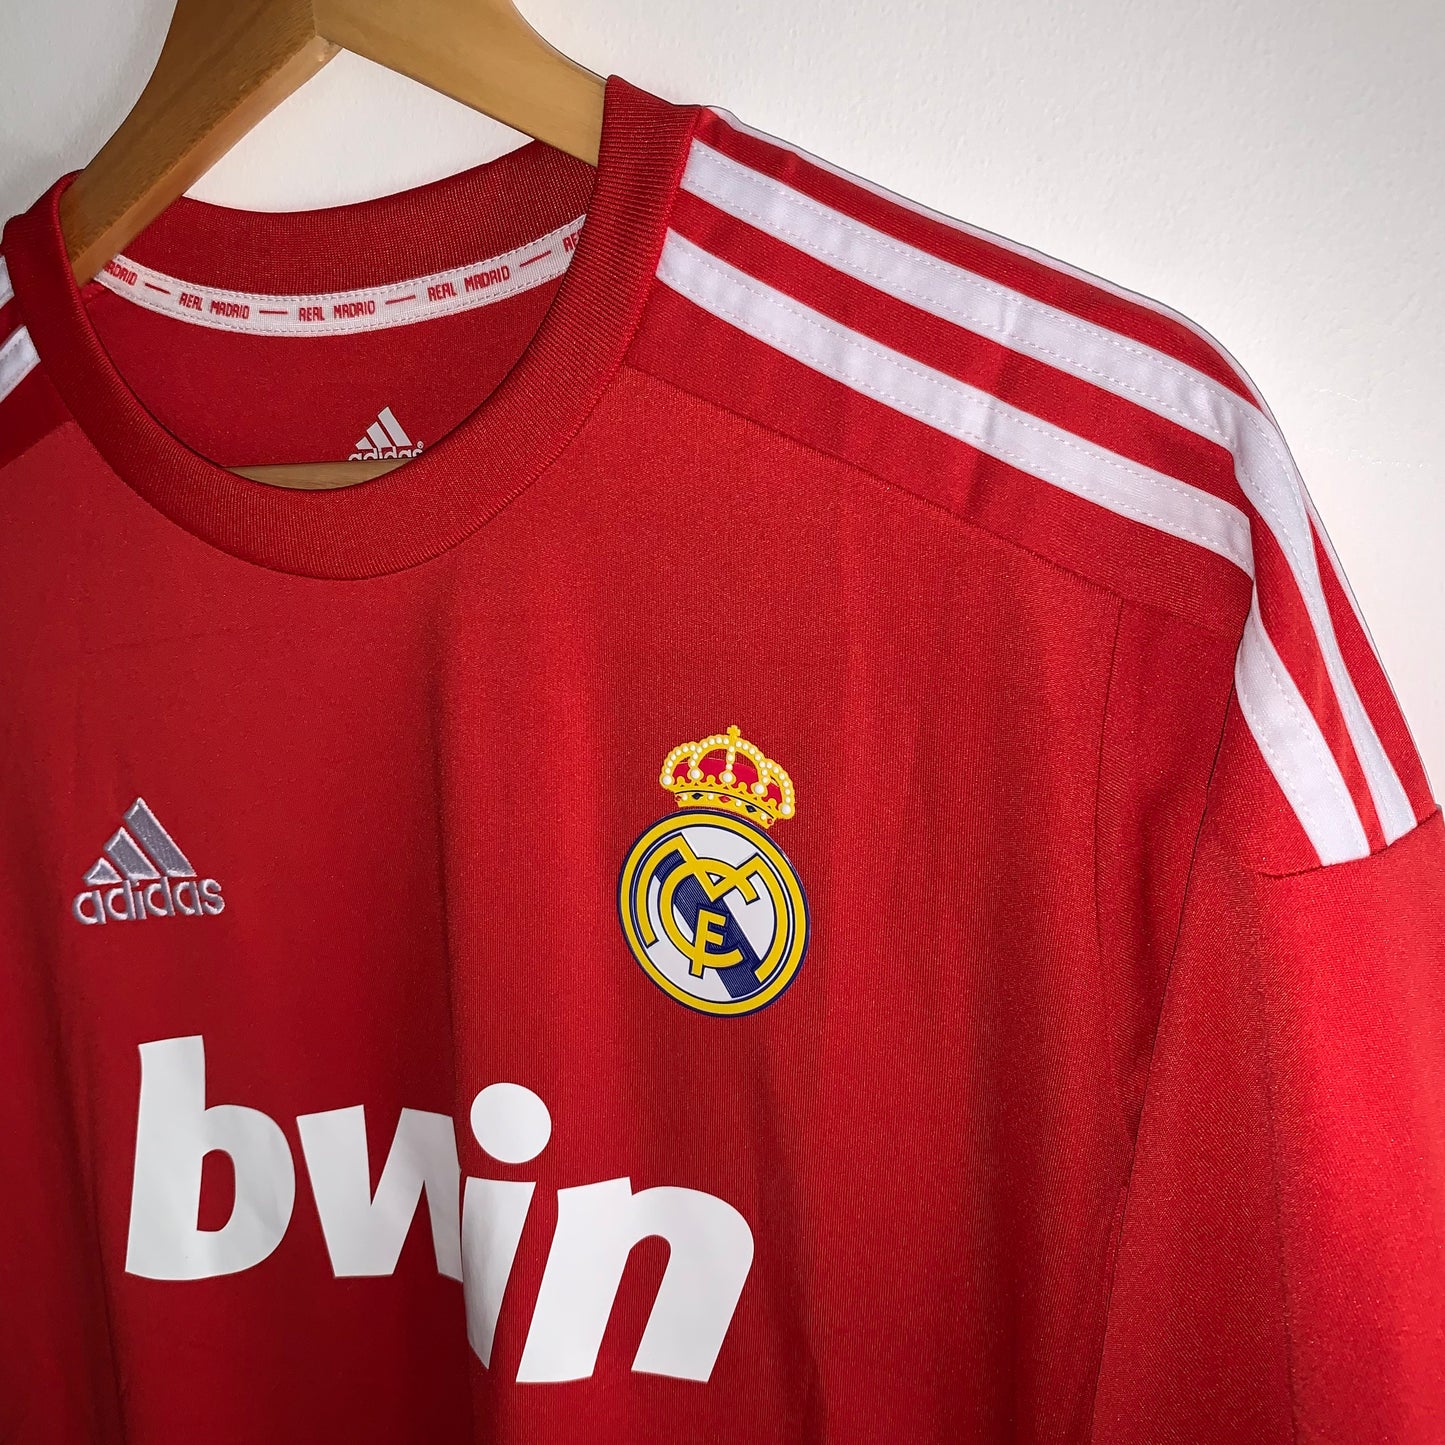 Real Madrid 2011/12 Third shirt